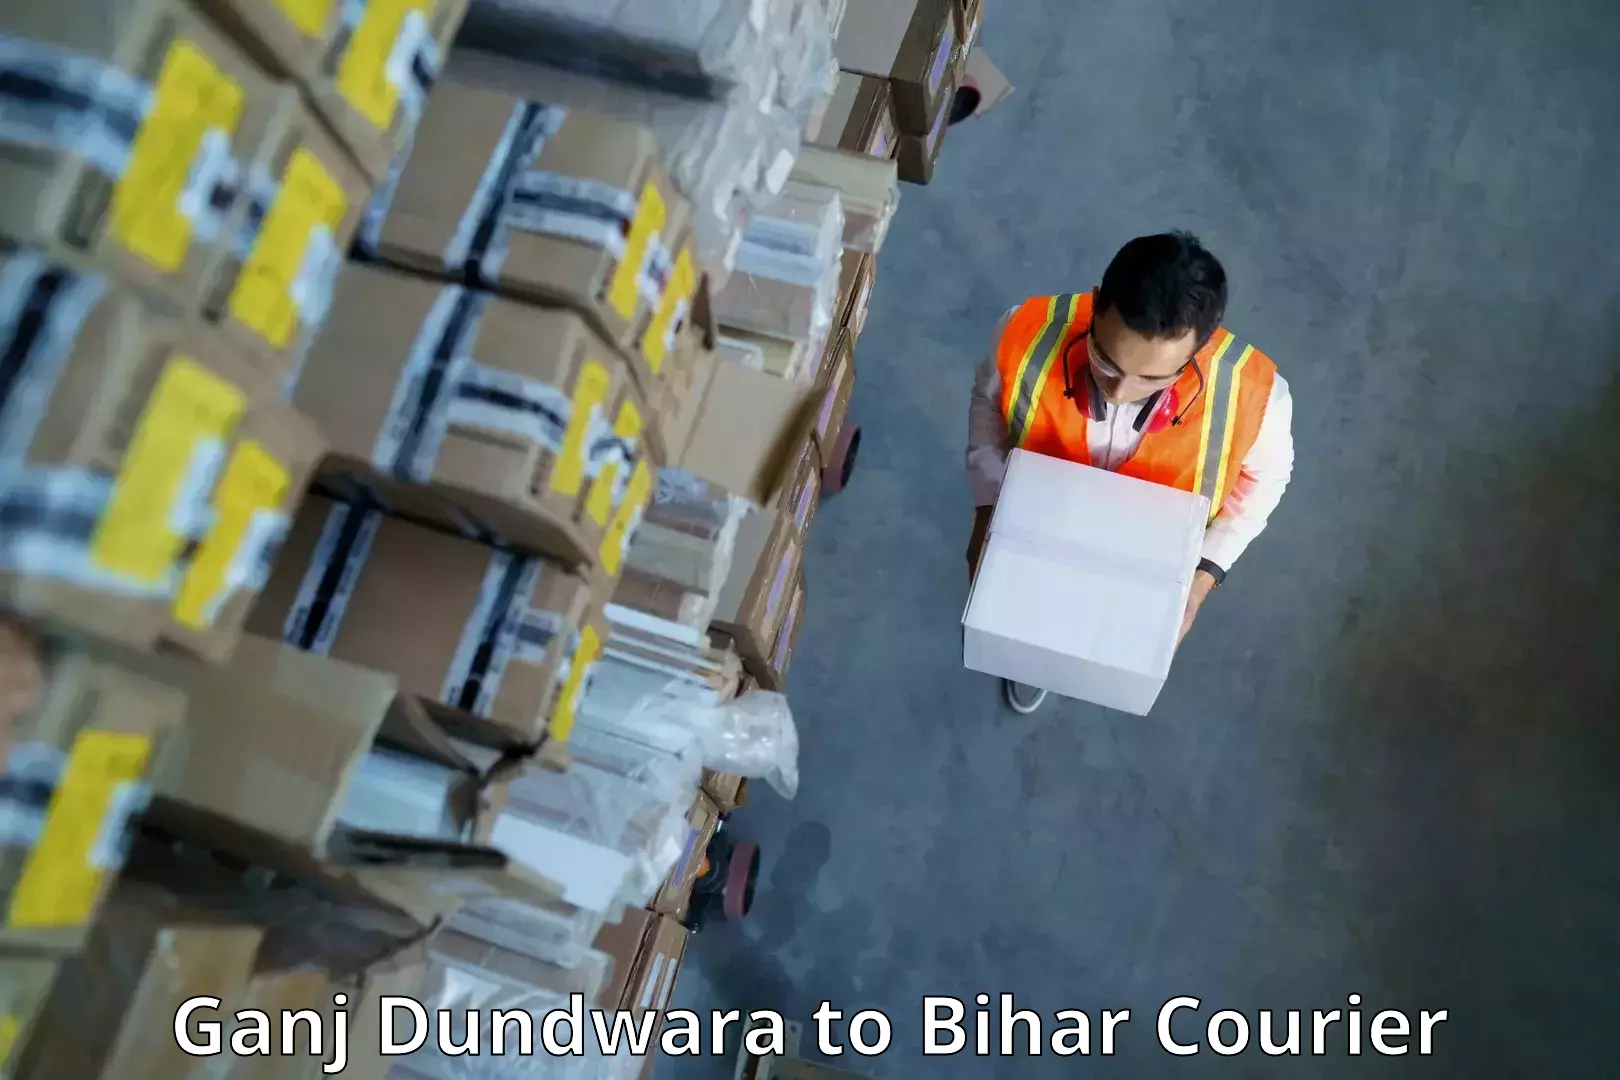 Expedited parcel delivery Ganj Dundwara to Bagaha